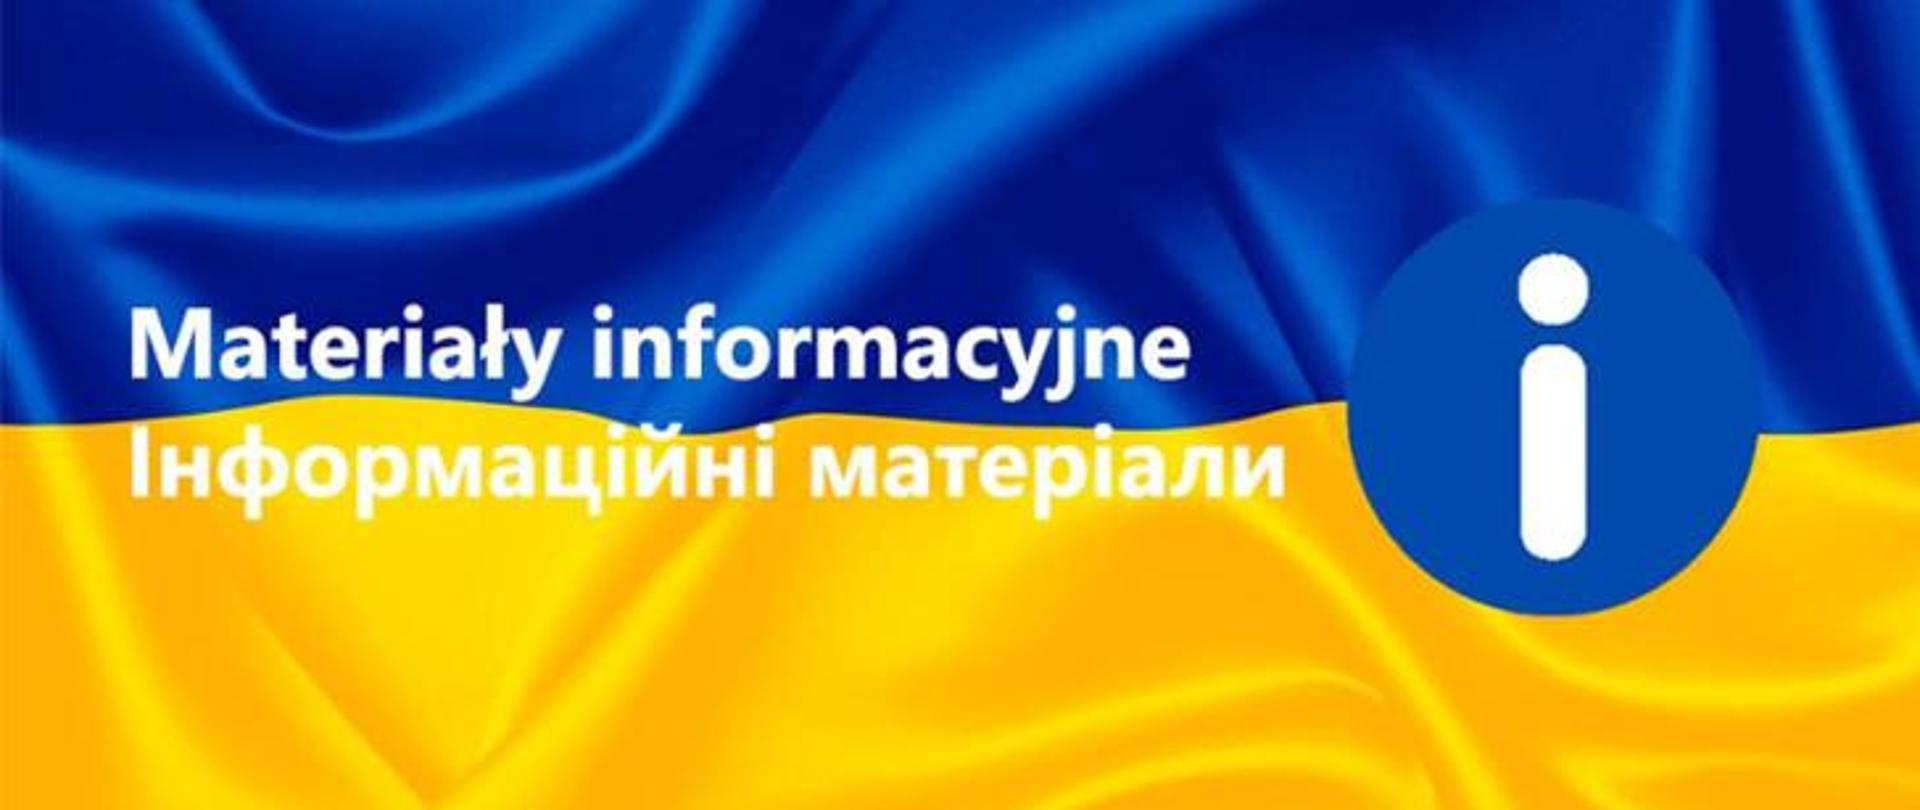 Na grafice w centrum widoczny jest napis: Materiały informacyjne, poniżej znajduje się jego odpowiednik w j. ukraińskim. Po prawej stronie znajduje się znak symbolizujący informację. W tle widoczna jest granatowo żółta flaga Ukrainy.